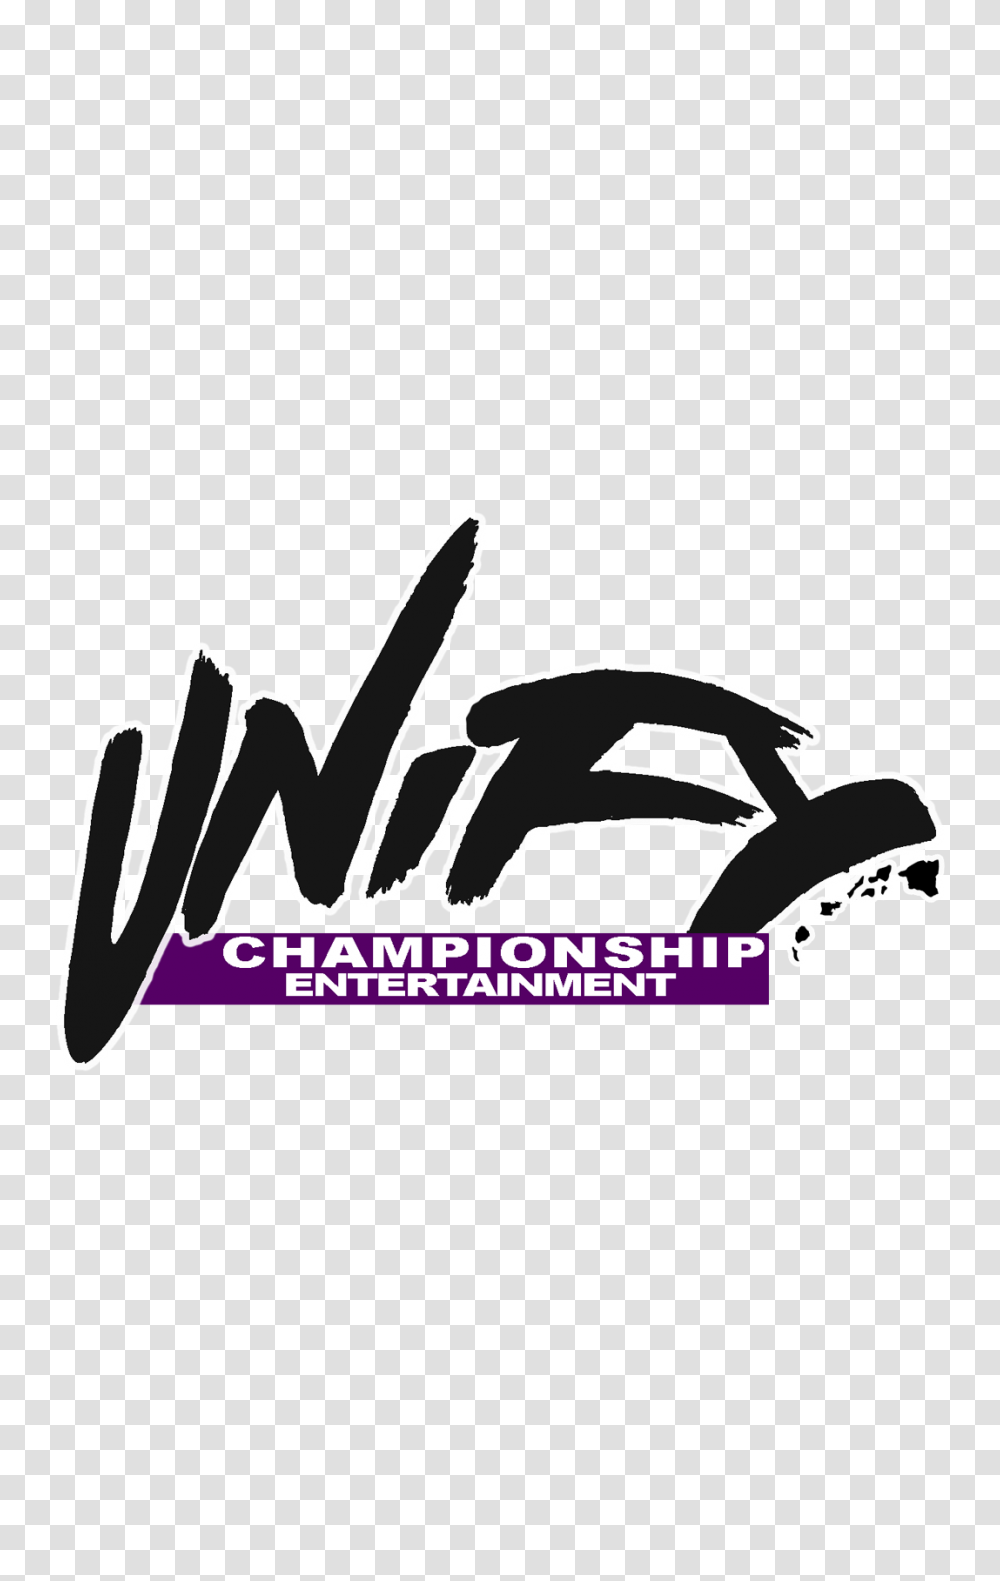 Radiant Rain Unify Championship Entertainment, Label, Text, Logo, Symbol Transparent Png